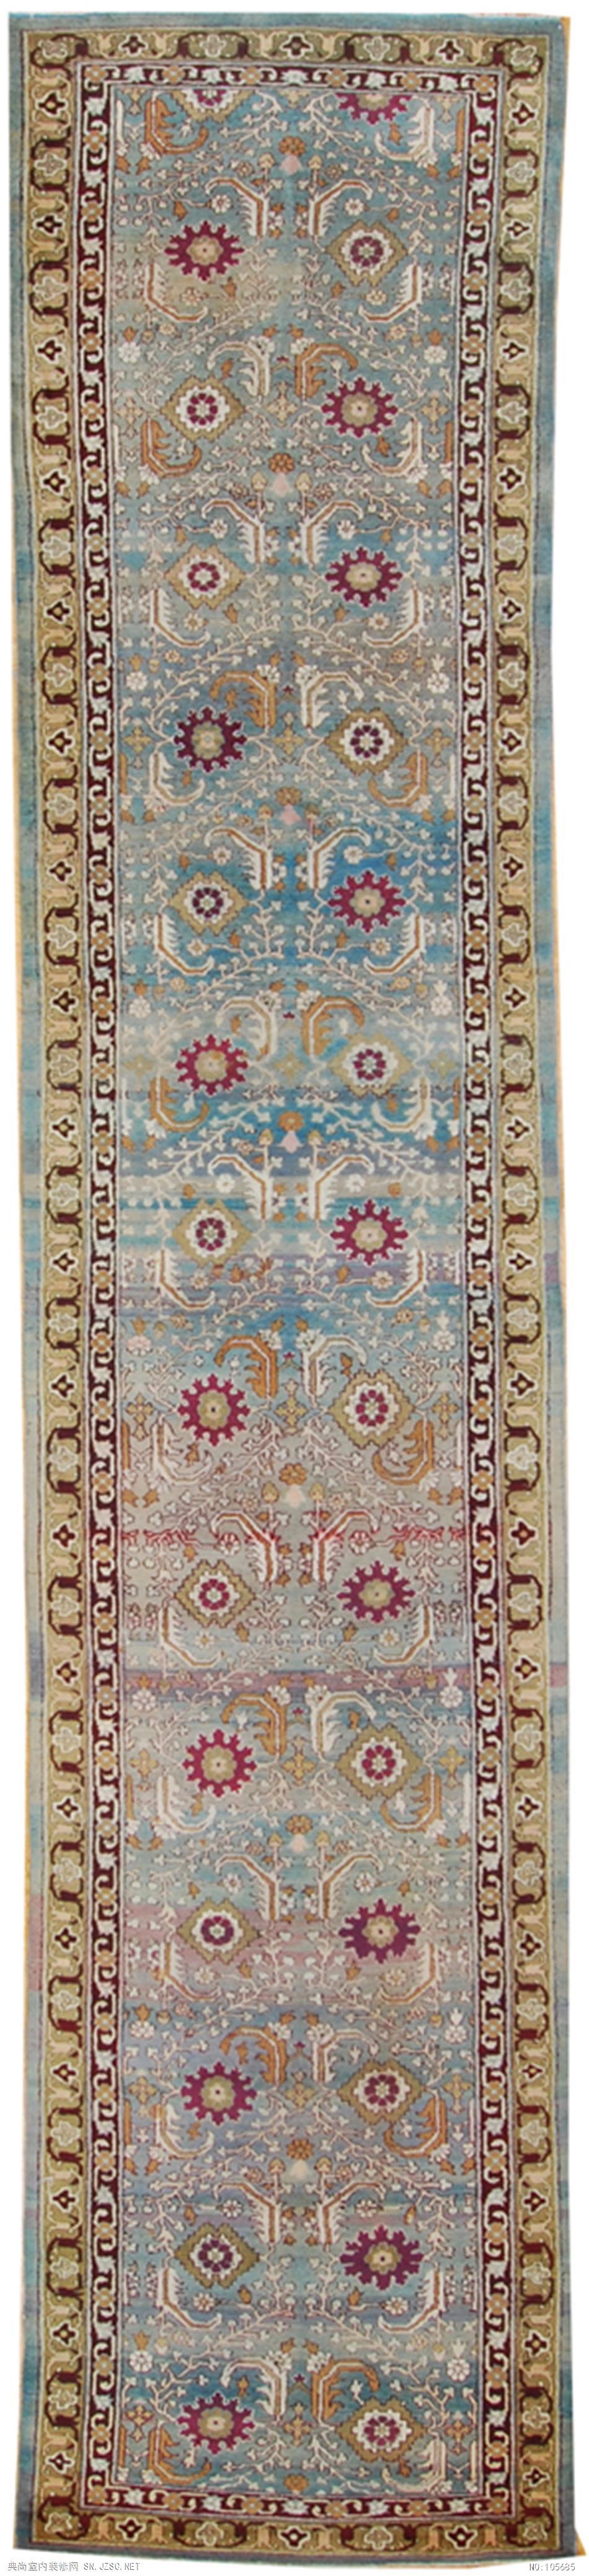 欧式风格地毯 (185)